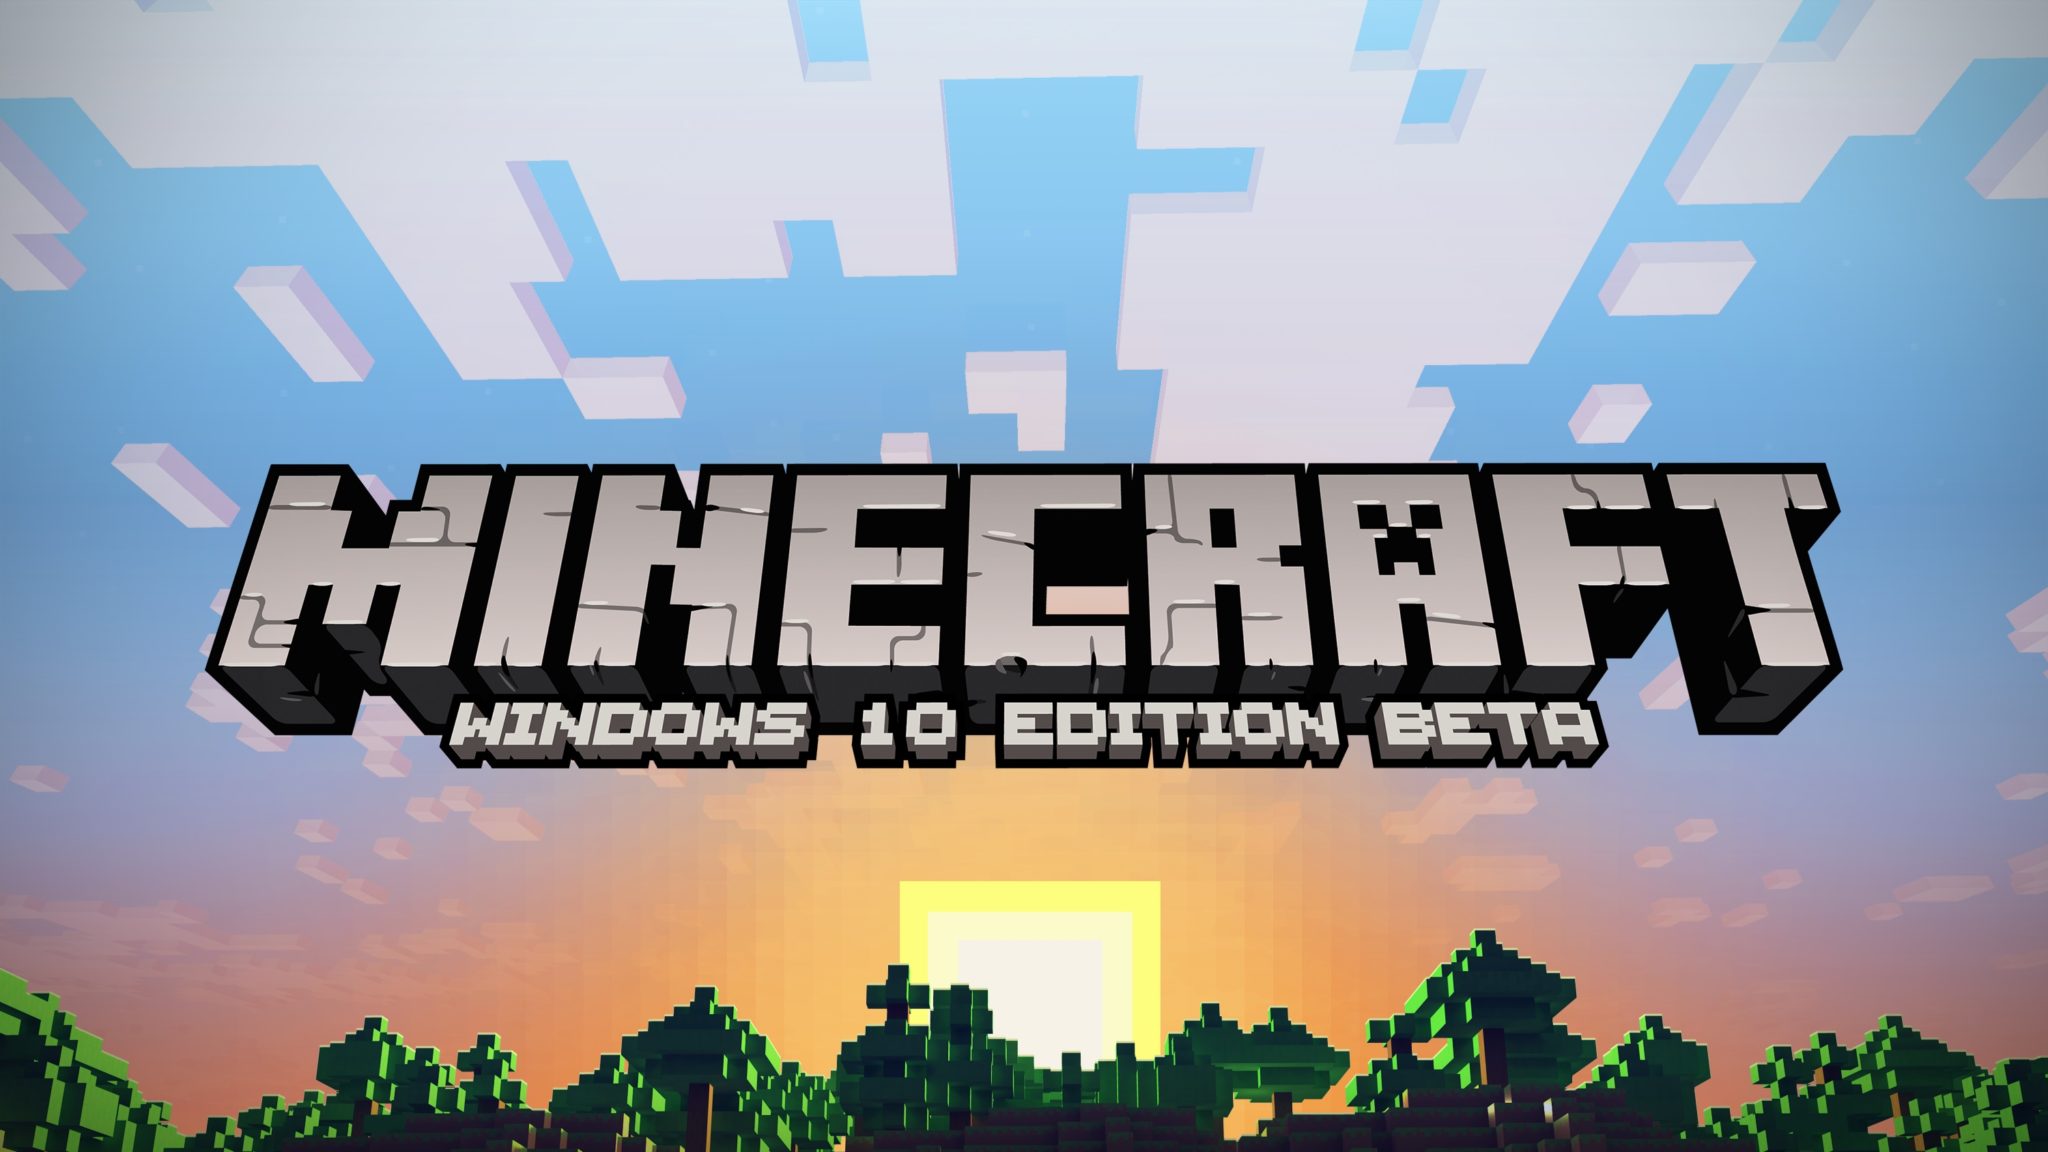 download minecraft windows 10 edition beta